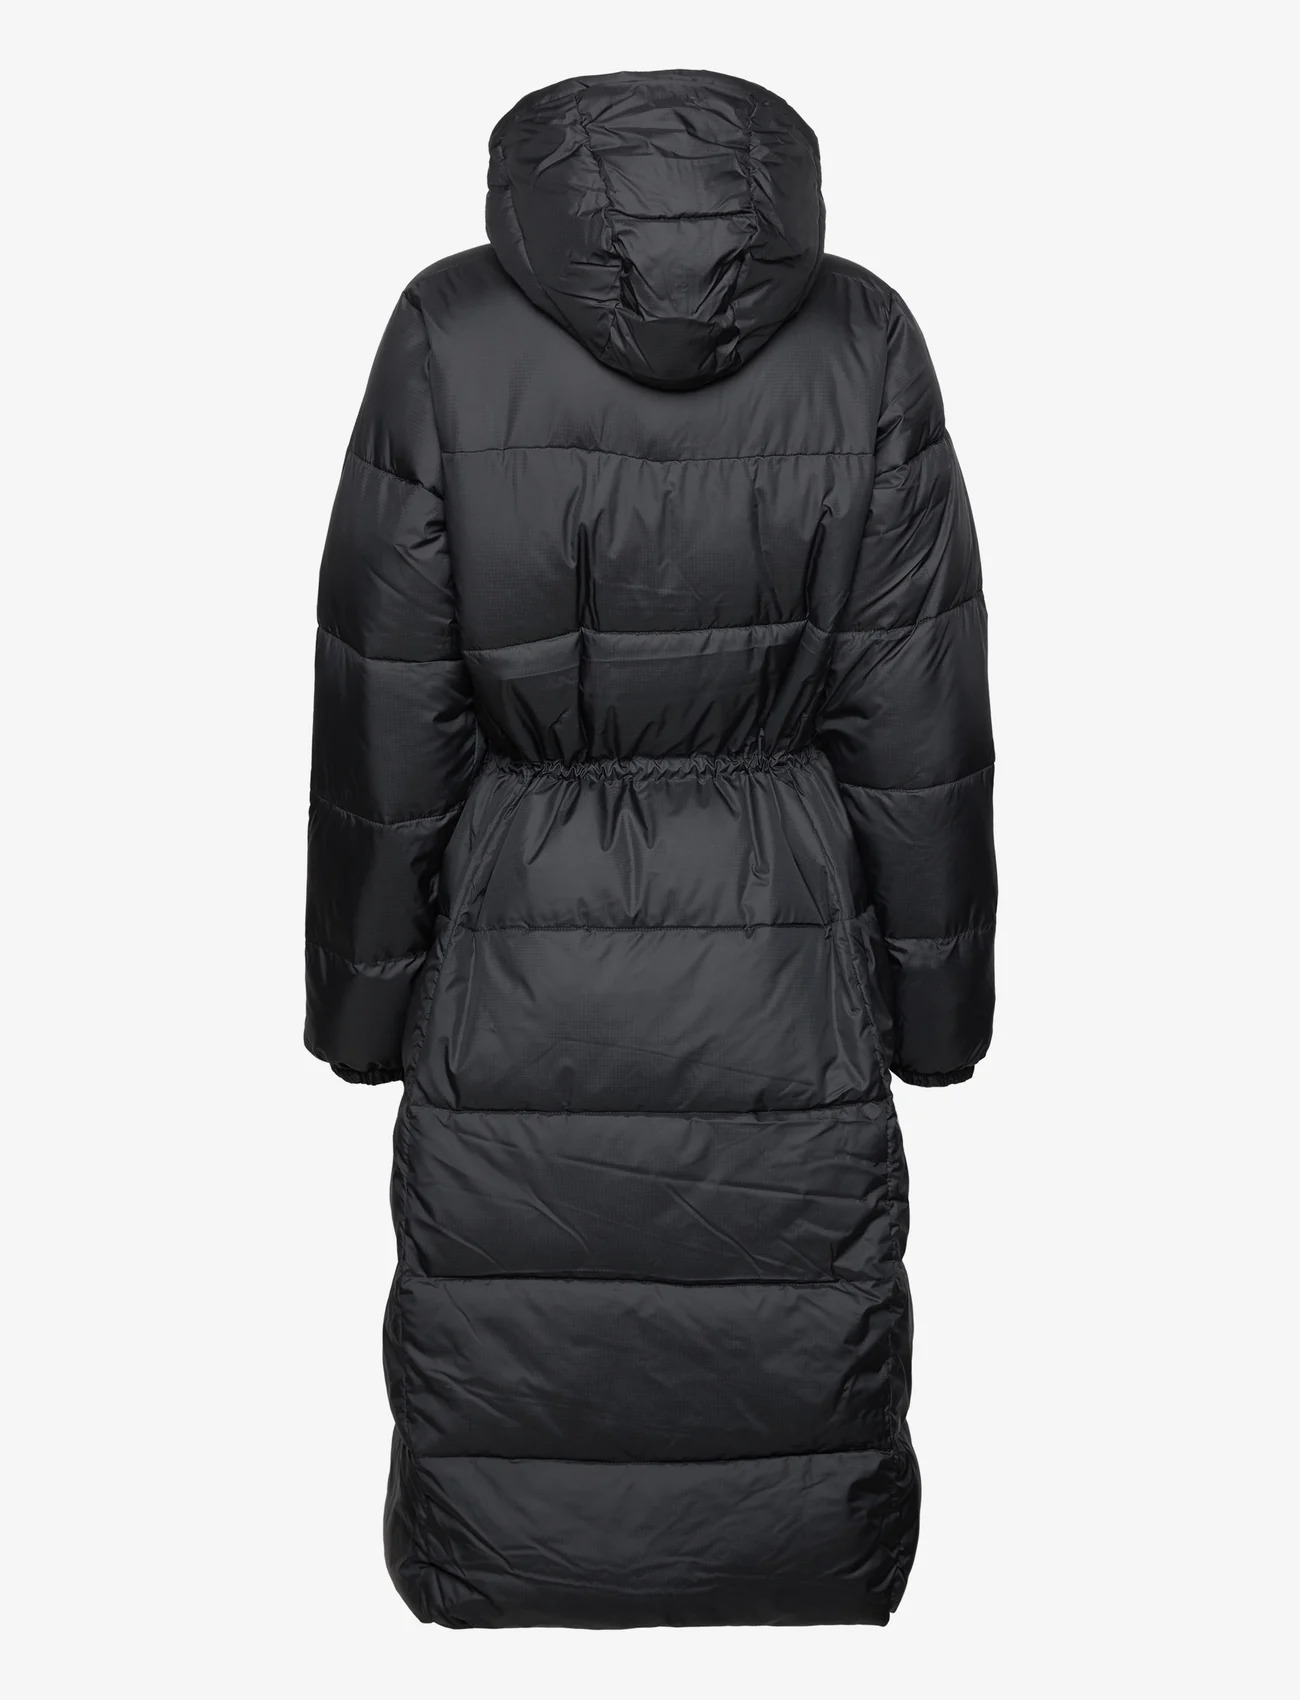 Columbia Sportswear - Puffect Long Jacket - dunfrakker - black - 1